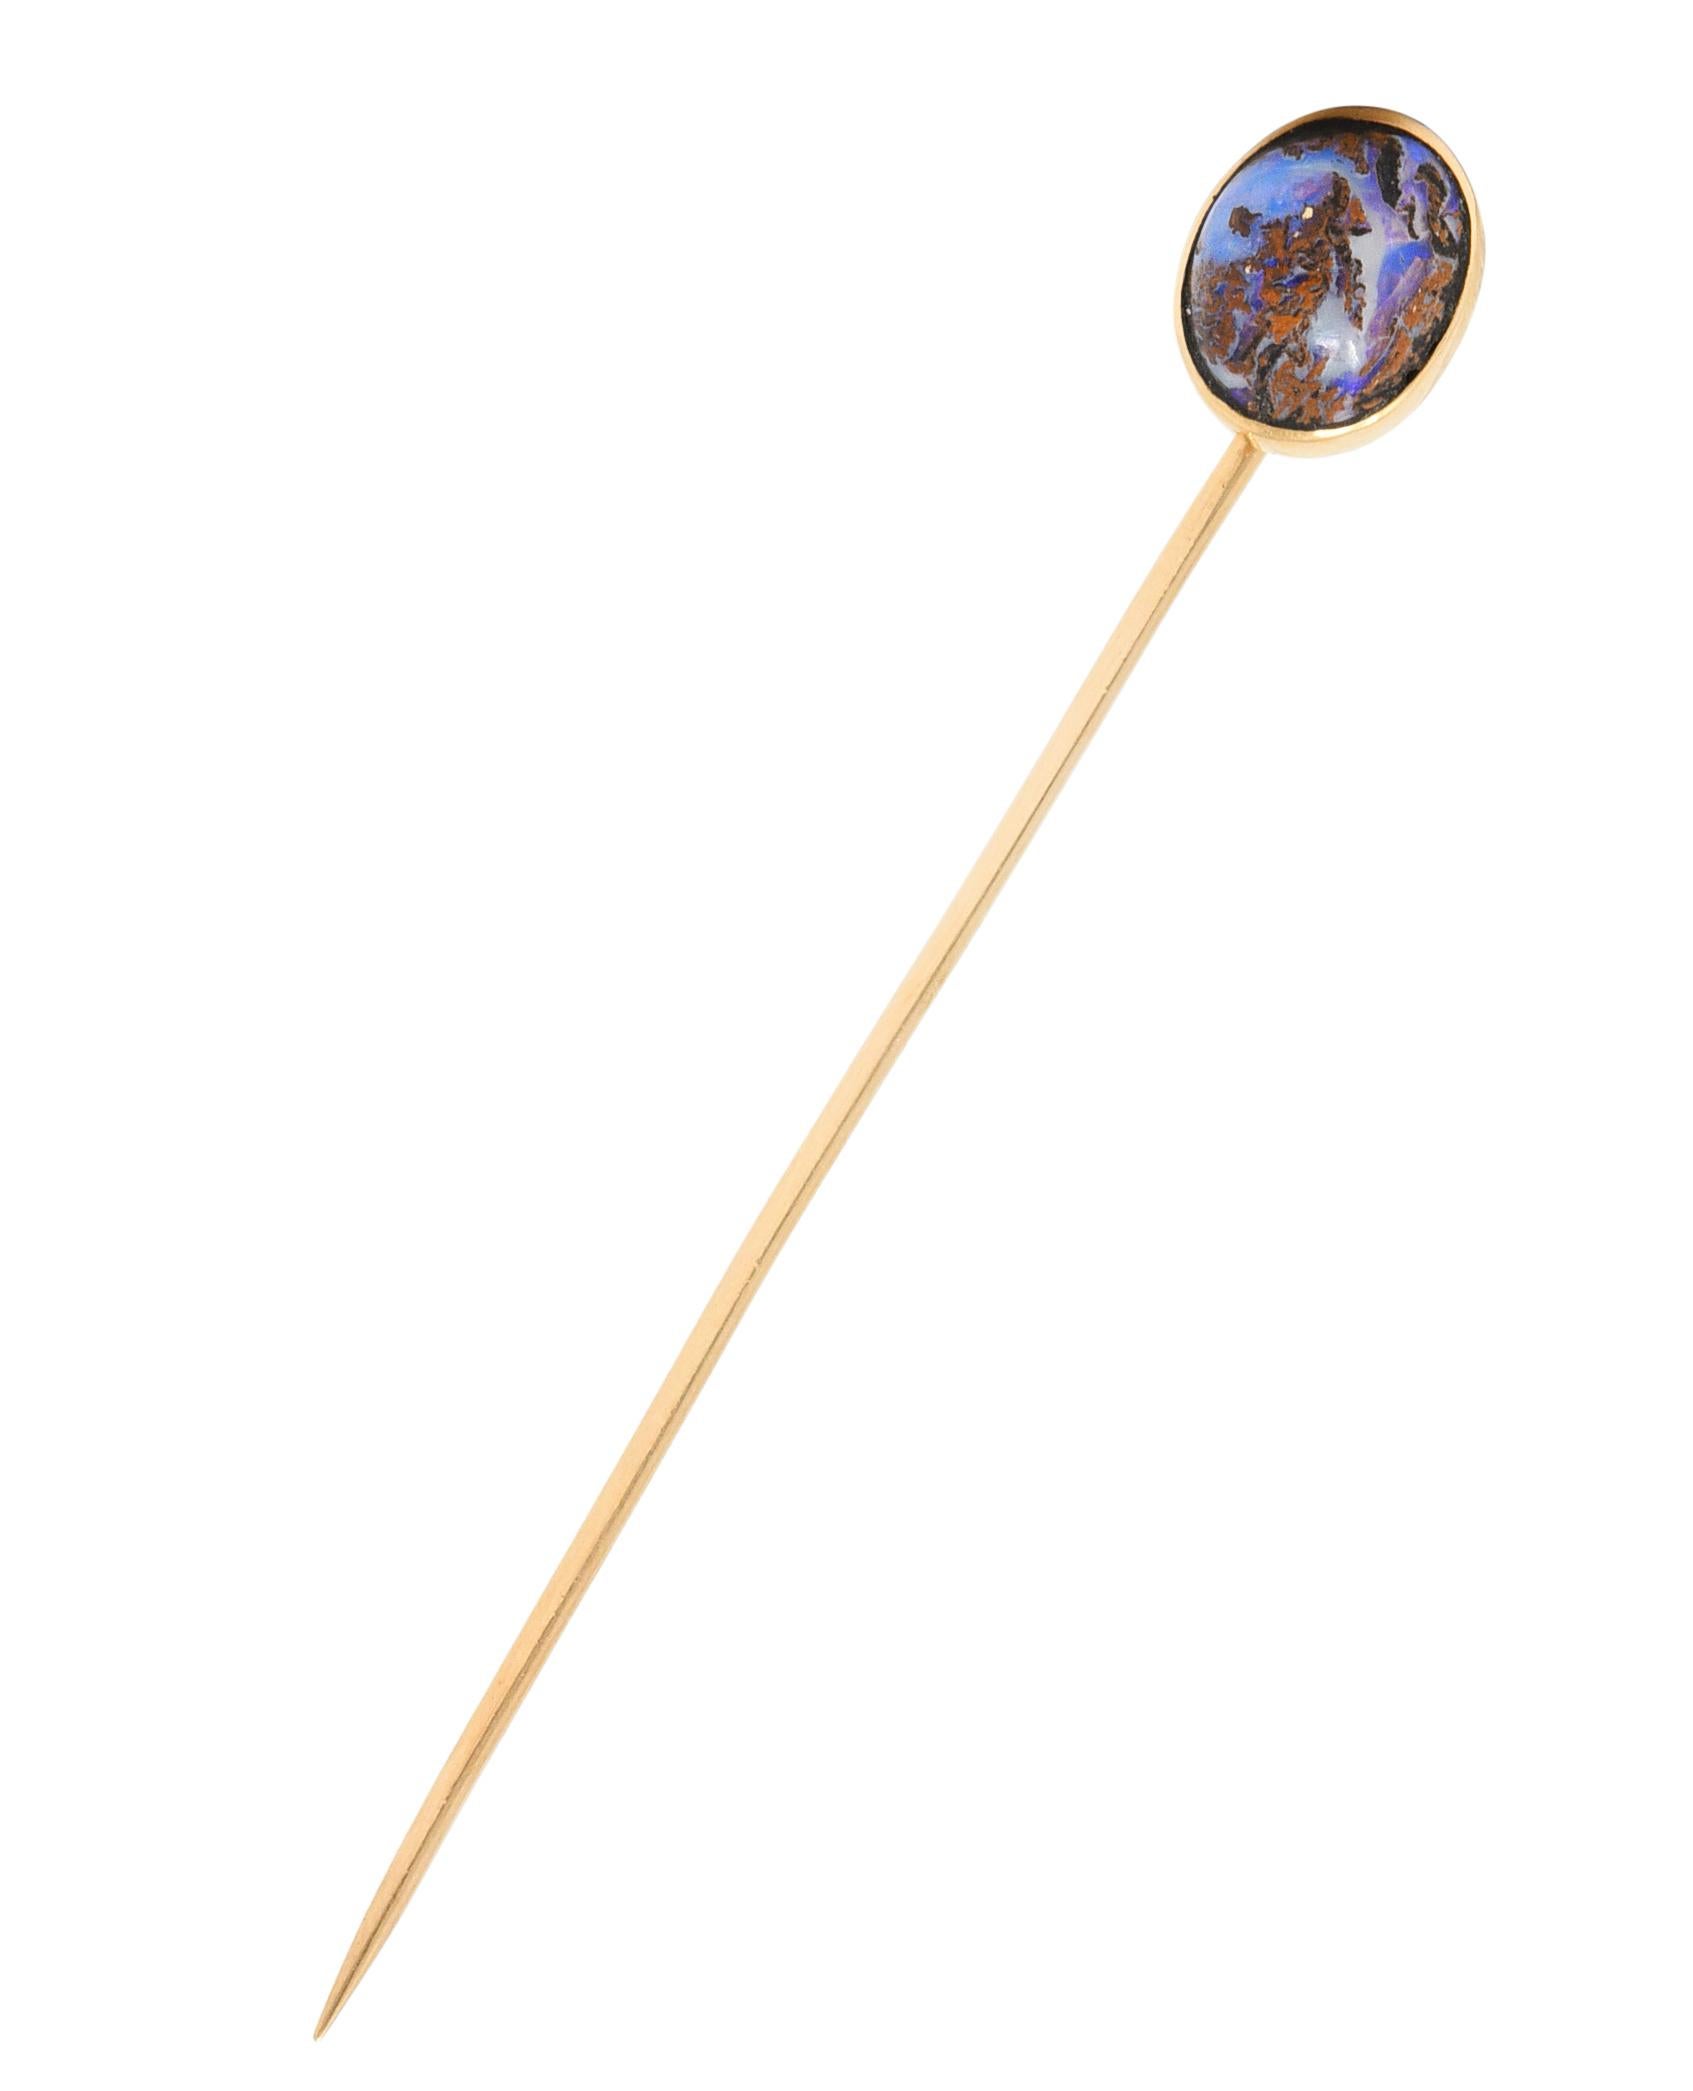 Centrage d'une opale de roche ovale cabochon mesurant environ 10,0 x 8,0 mm

Matrice brune opaque avec des zones d'opale blanche avec un fort jeu de couleurs bleu/violet

Serti dans une lunette en or poli

Testé comme de l'or 14 carats

Circa :